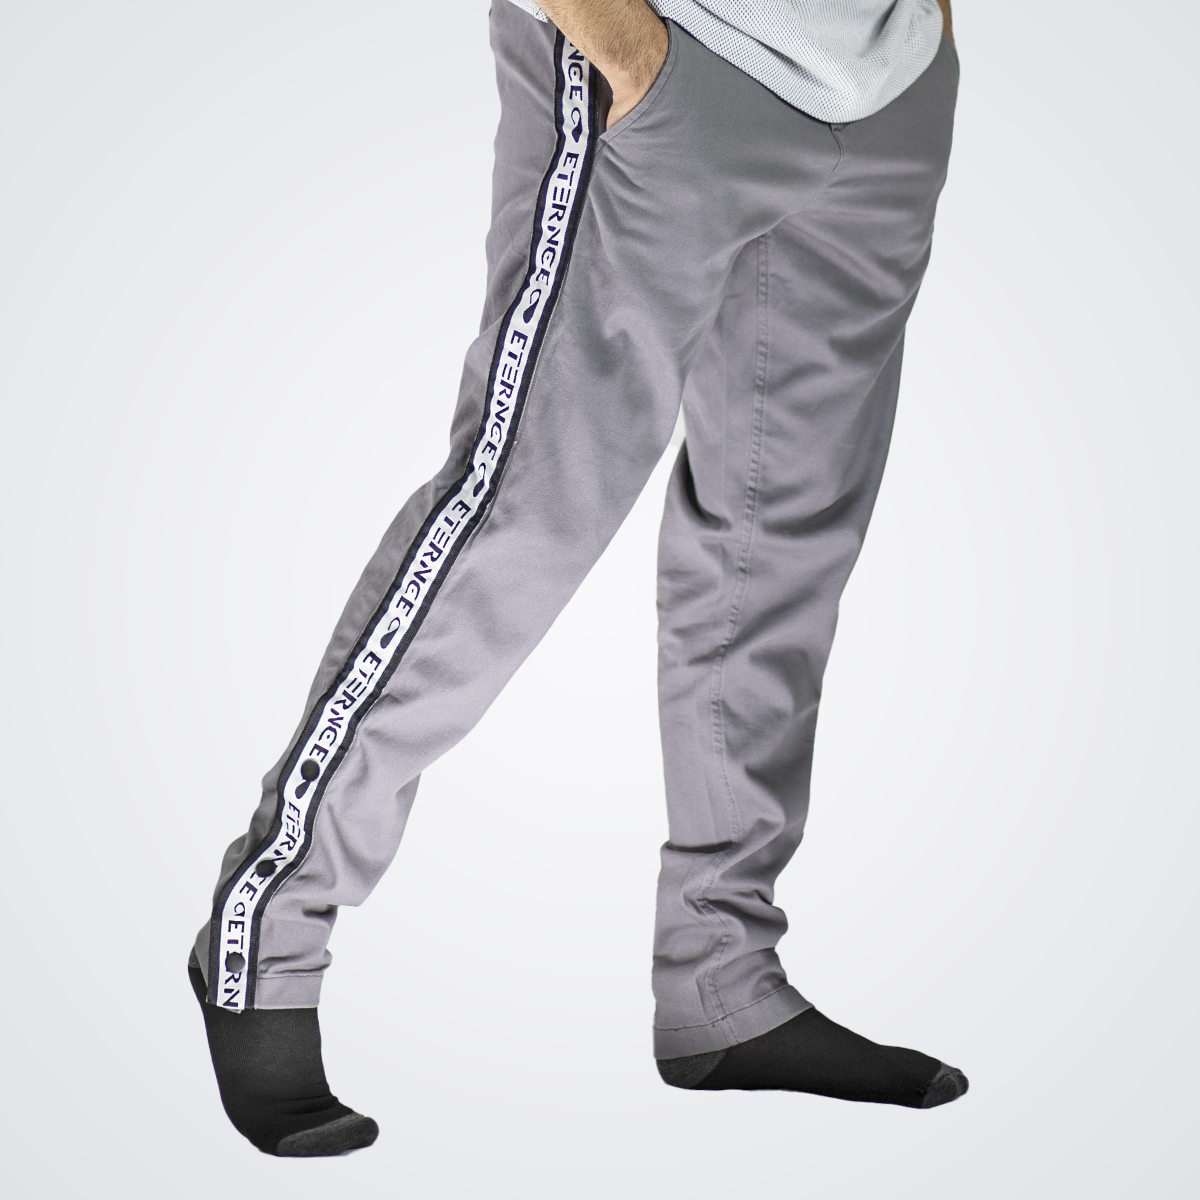 joggers Flex Fit Pants for Men's